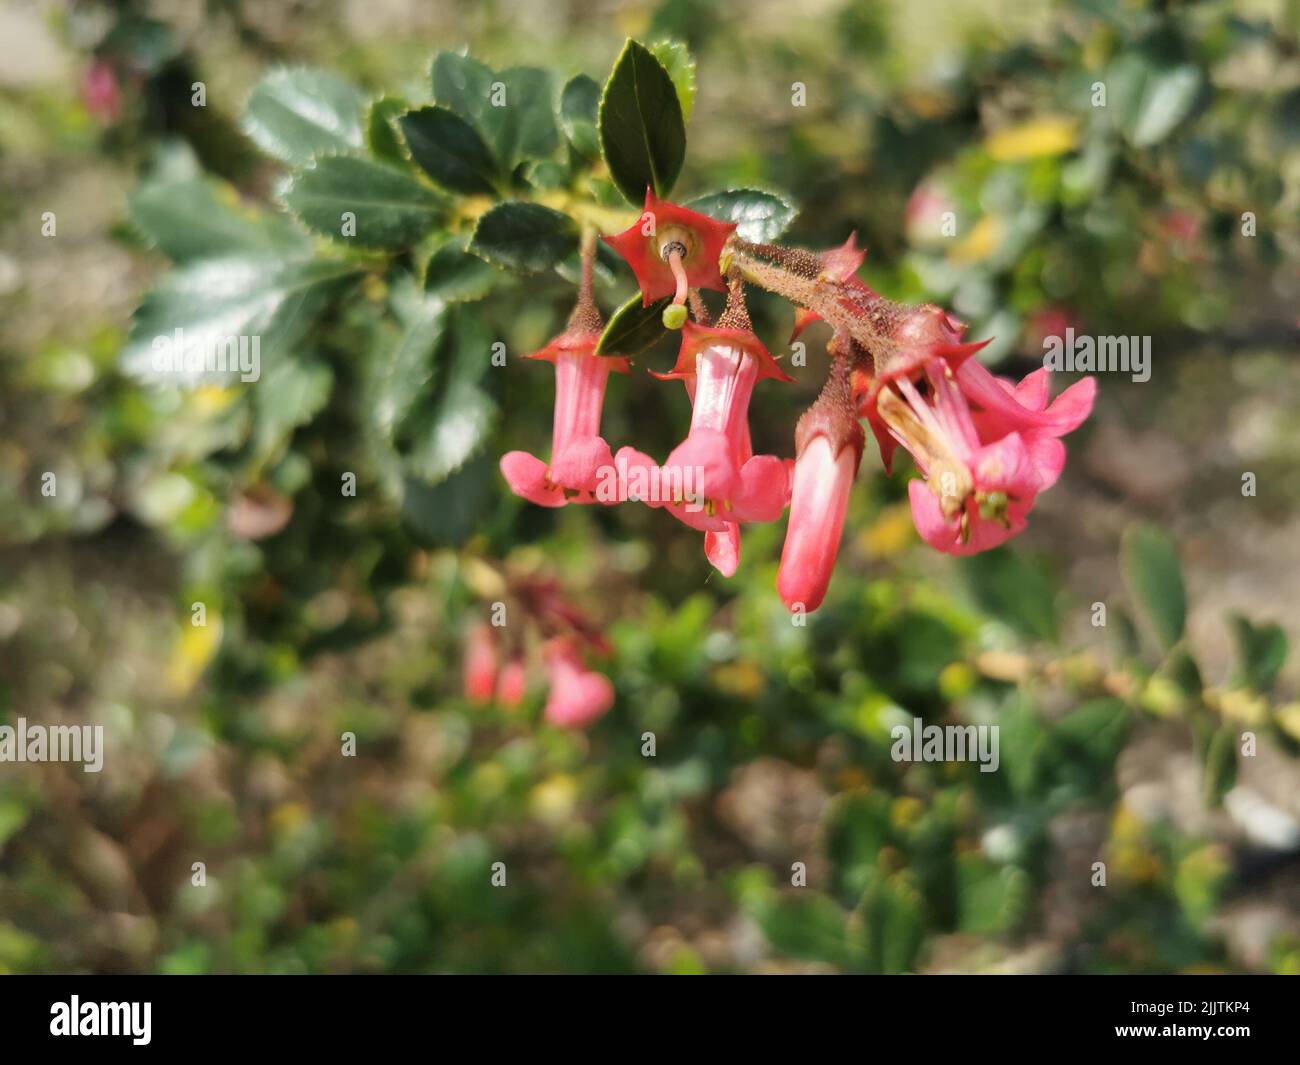 A closeup of growing Red Escallonia (Escallonia rubra) flowers in a garden Stock Photo